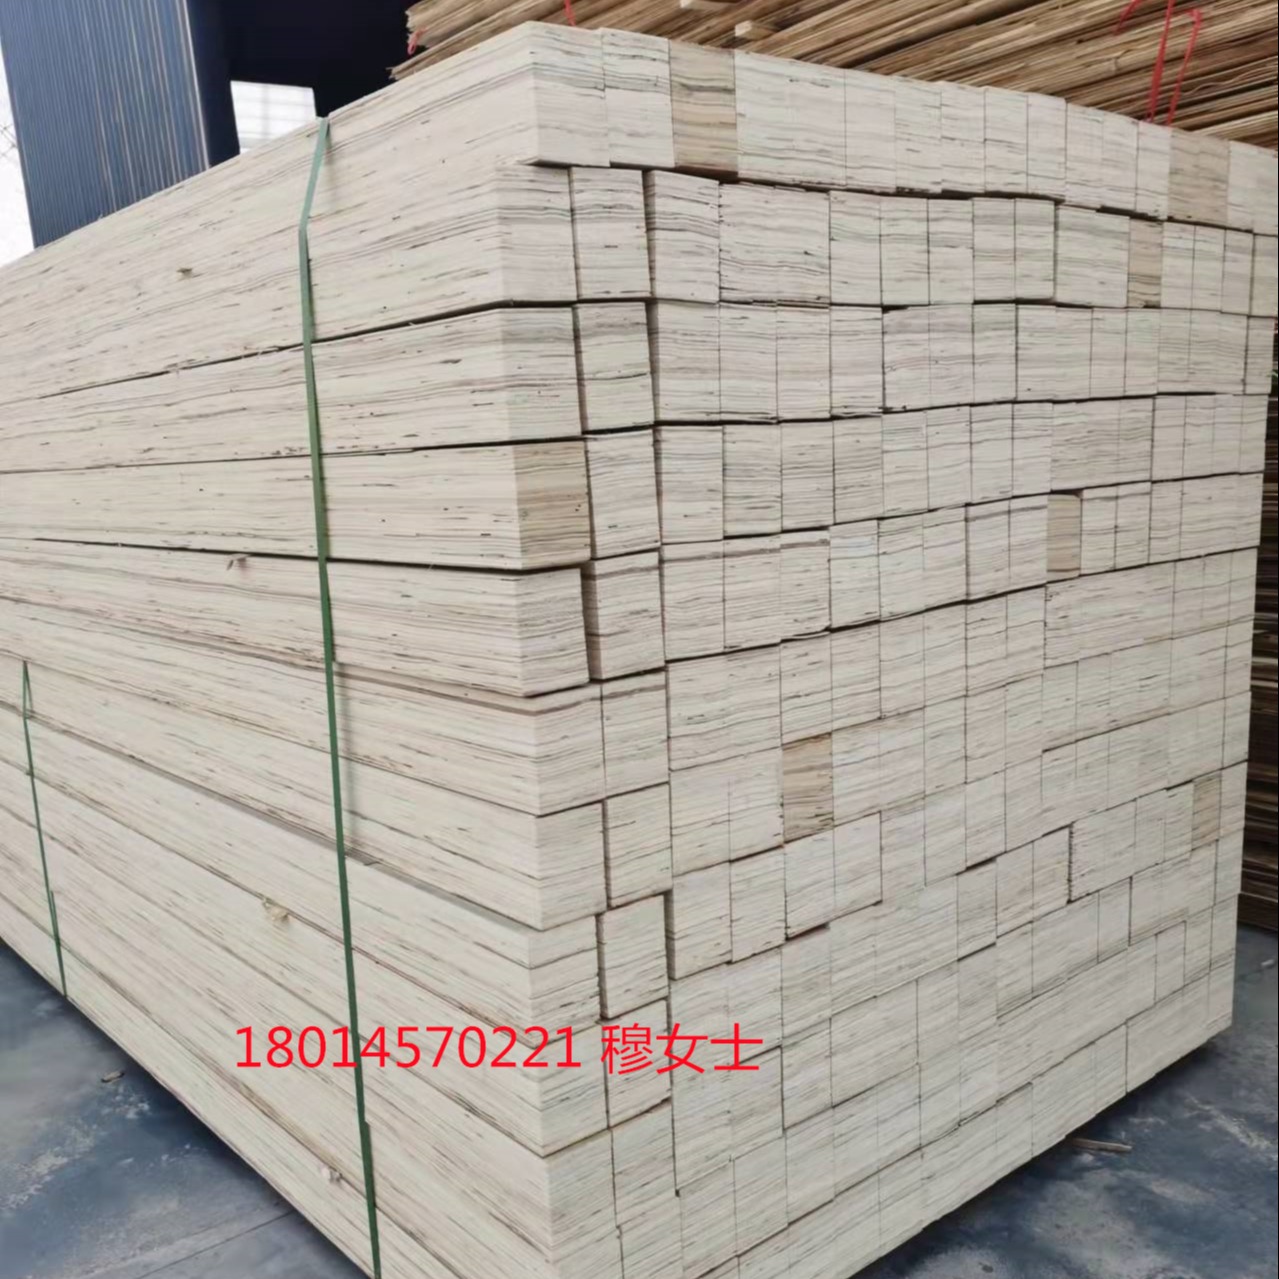 连盛木业供应免熏蒸LVL顺向板 优质杨木单板层积材 床架条沙发木龙骨图片